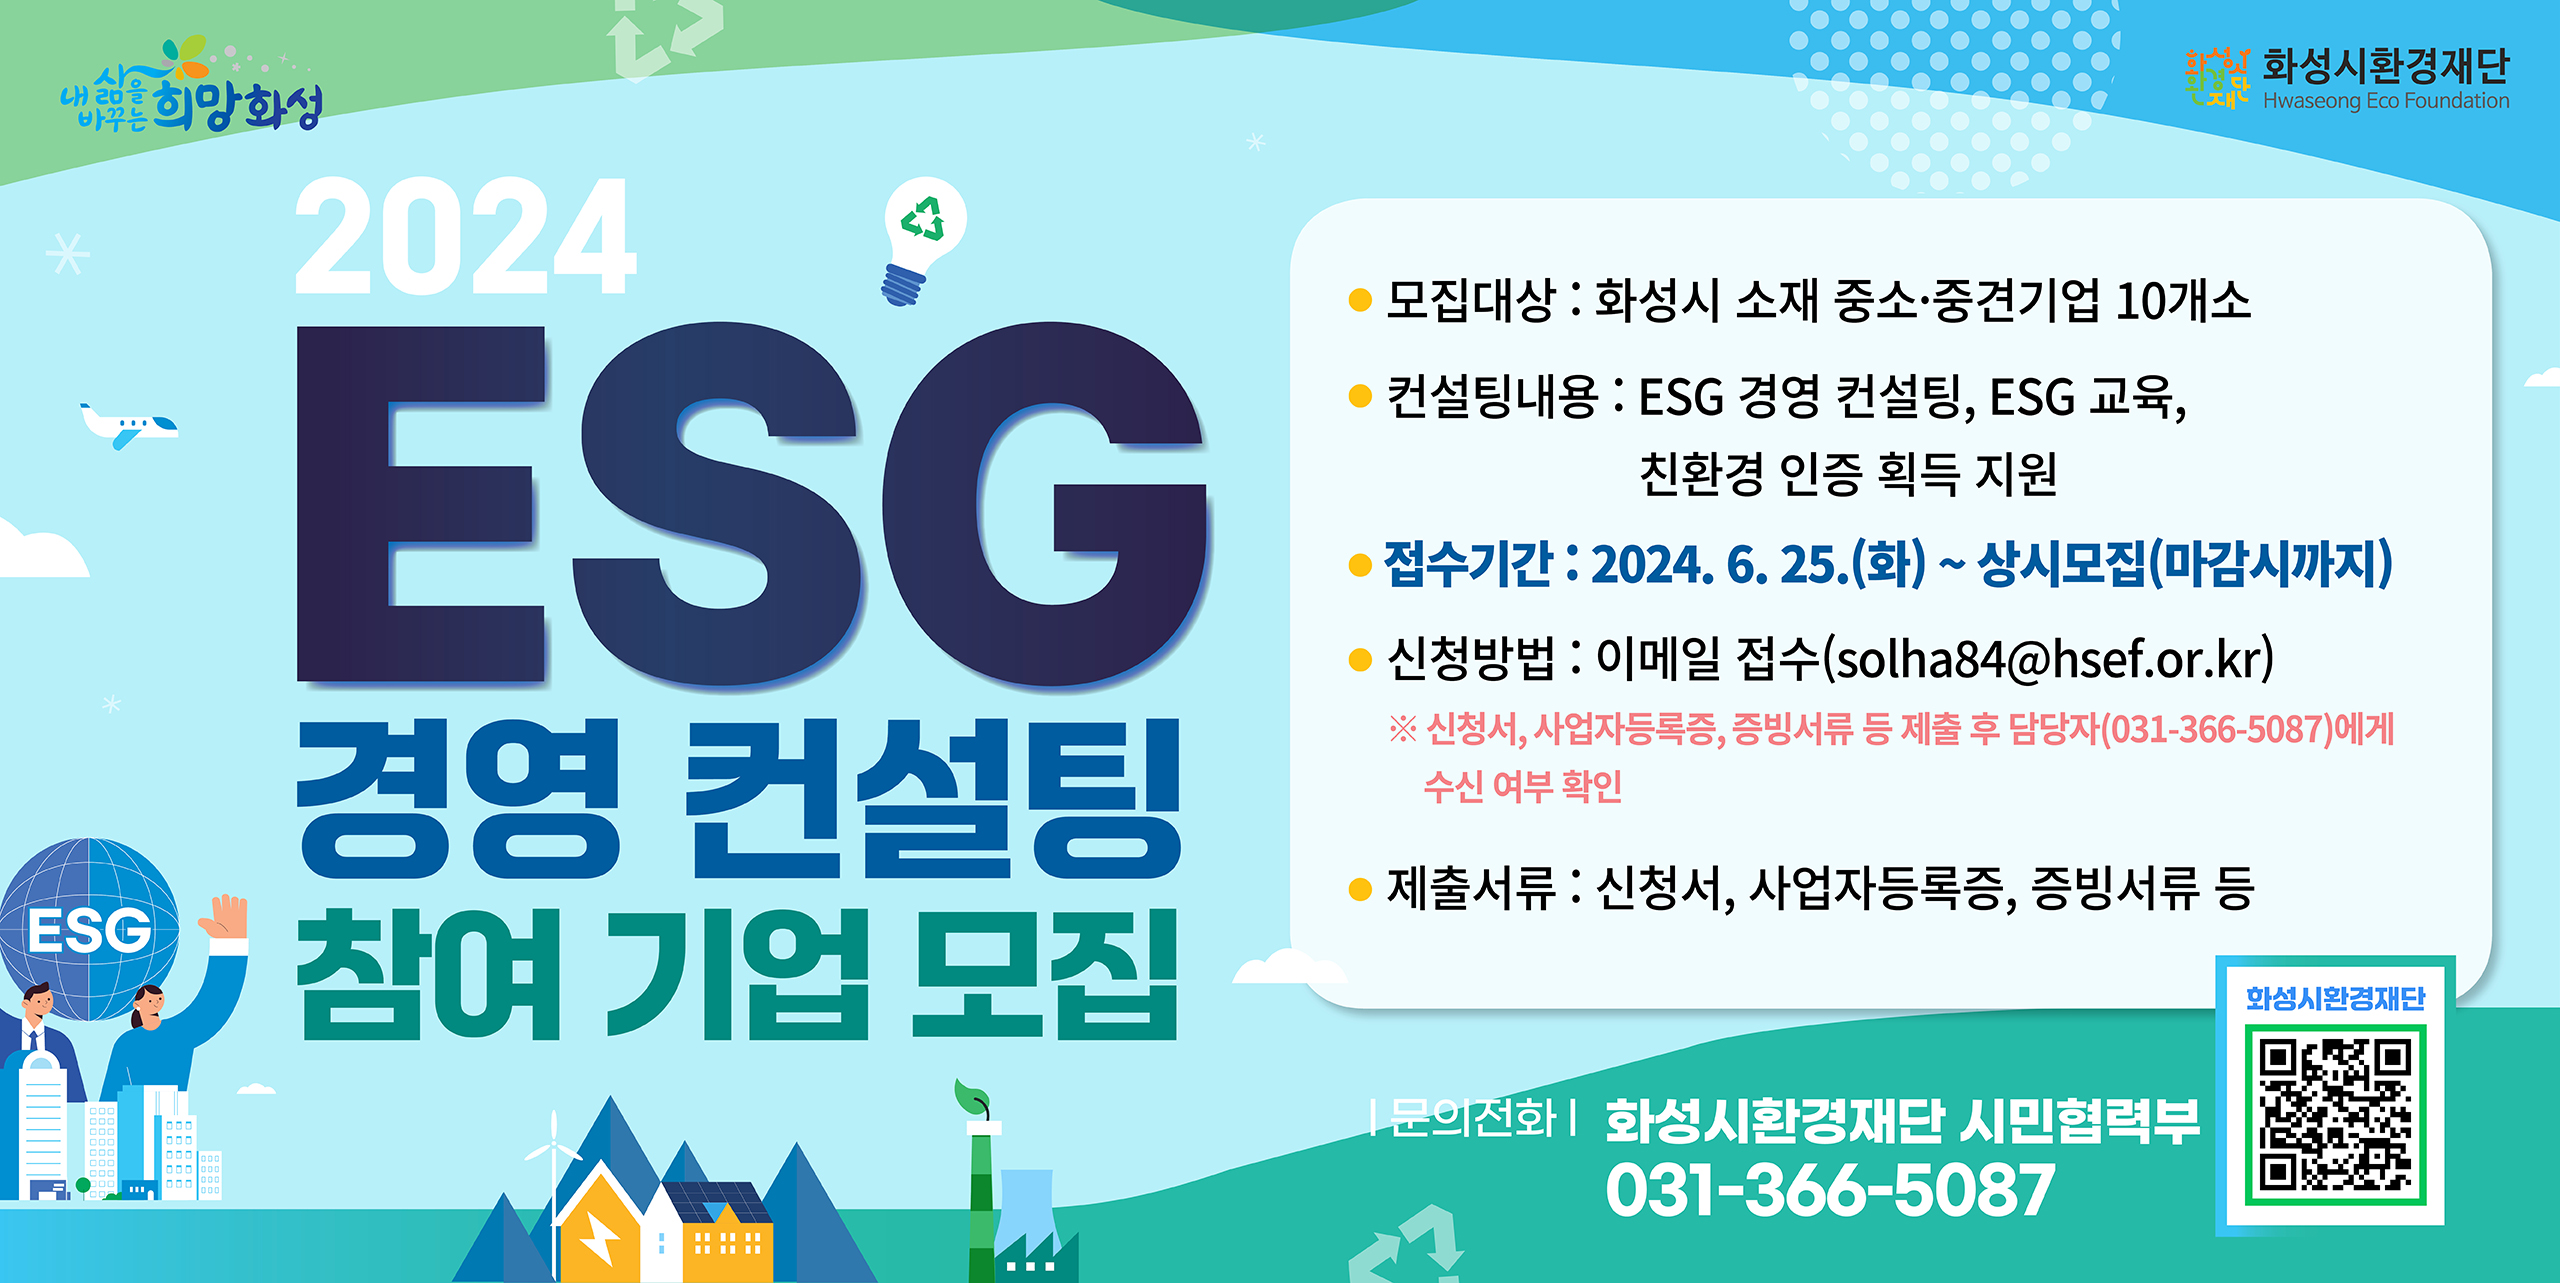 ESG 경영 컨설팅 참여기업 모집